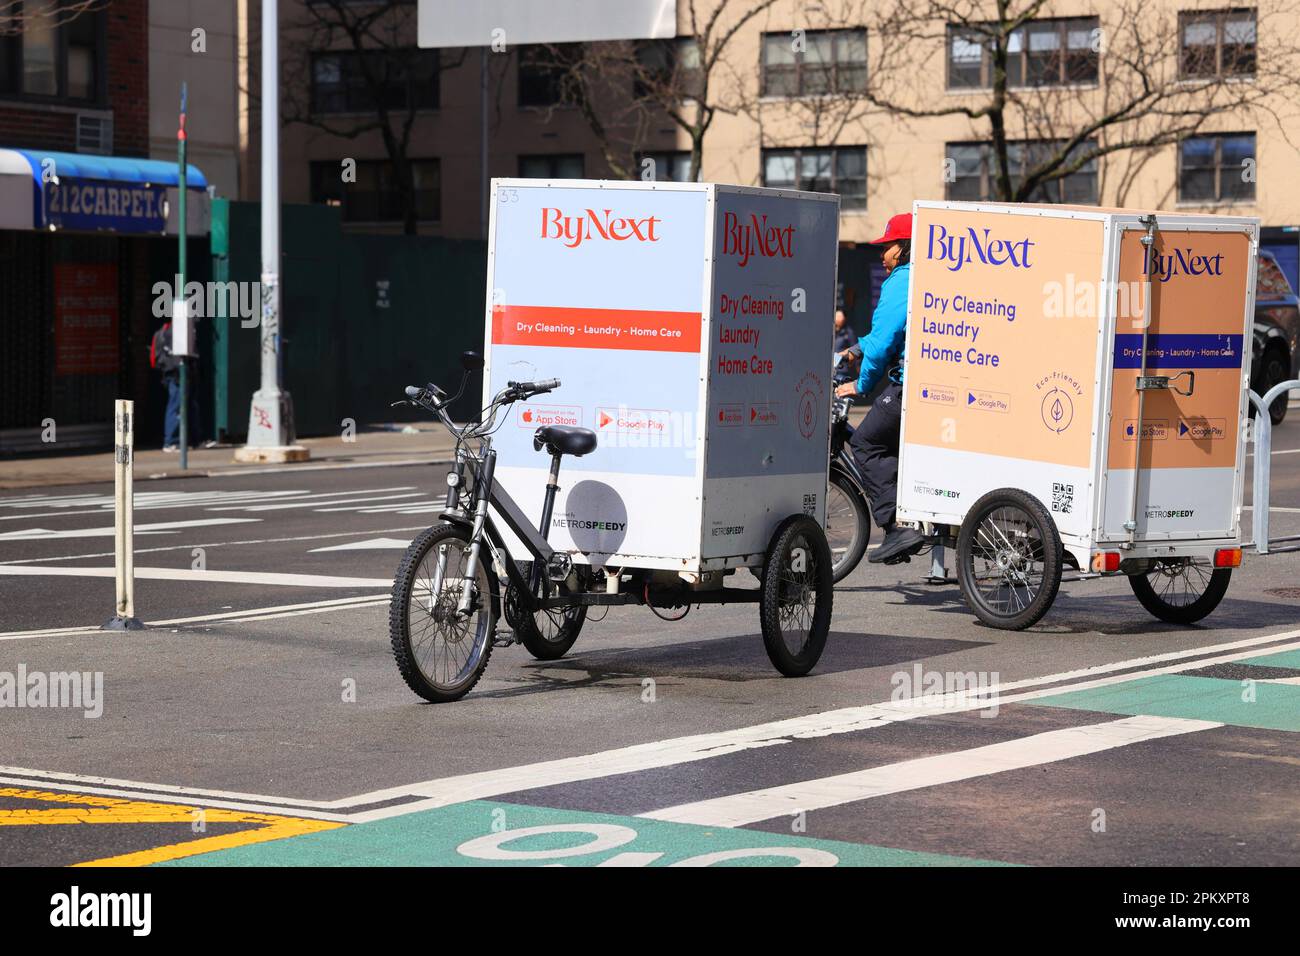 ByNext chemische Reinigung und Wäscherei Pedal Unterstützung elektrische Ladung Trikes, Lastenrad in New York City. Stockfoto